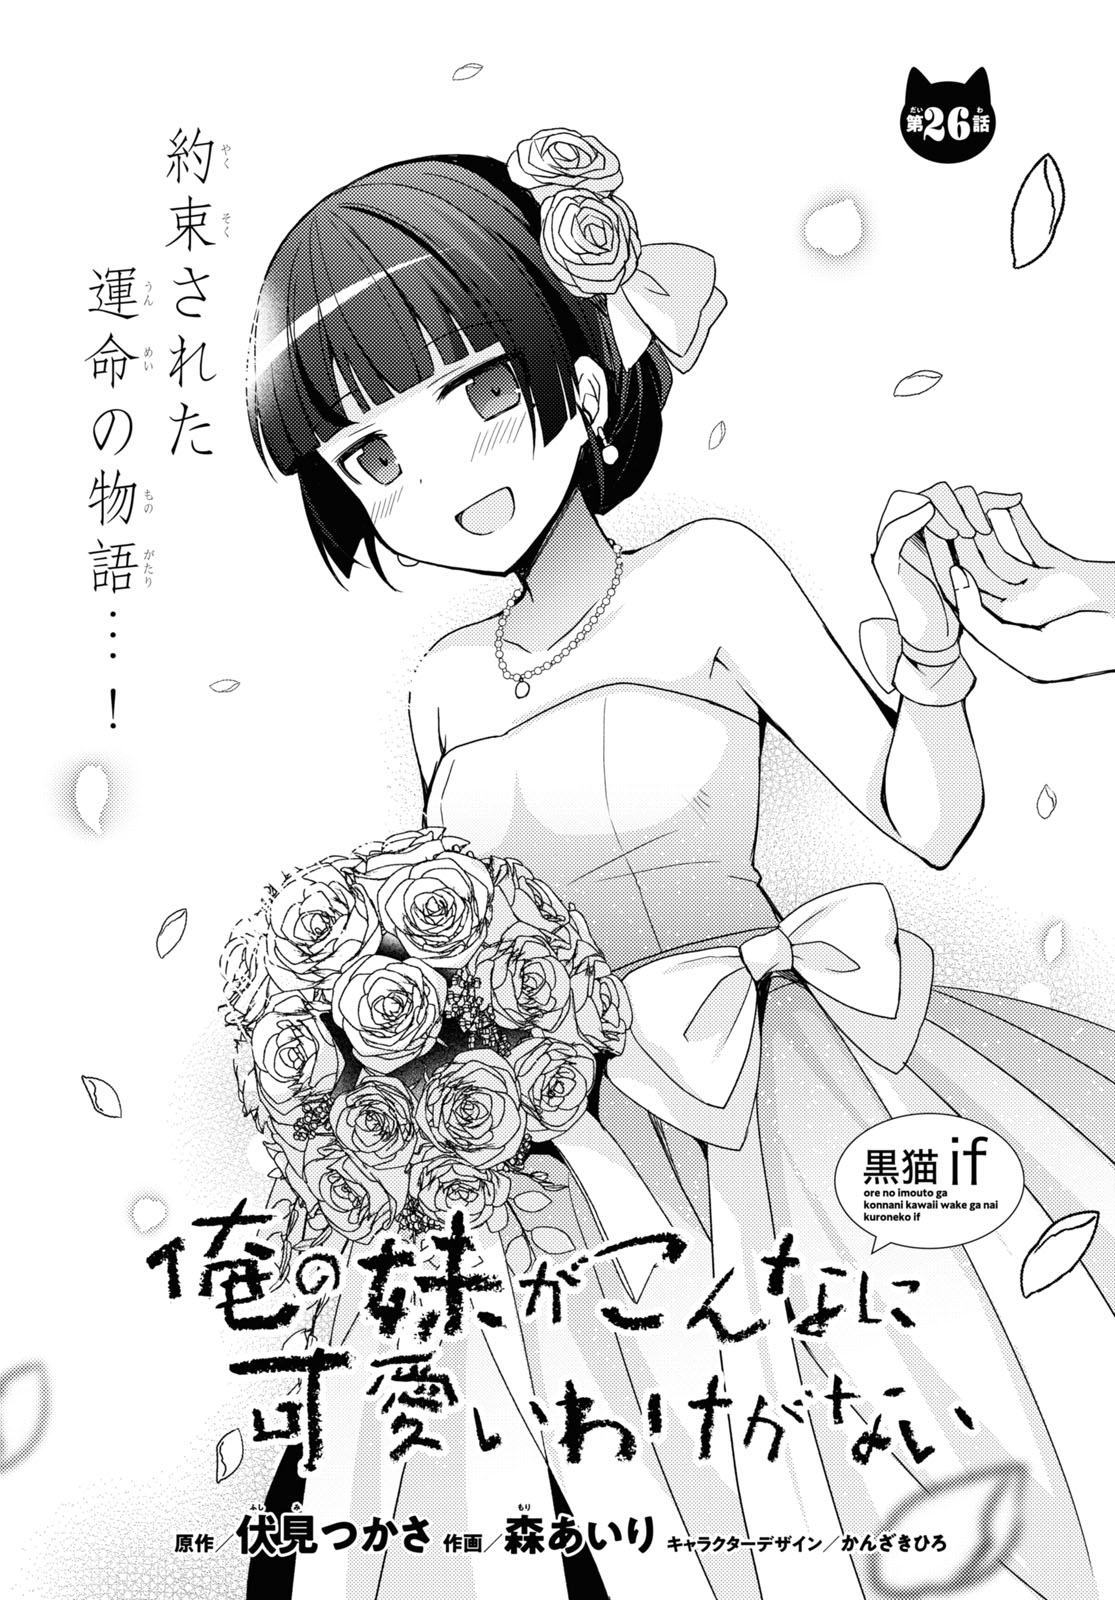 Ore no Imouto ga Konna ni Kawaii Wake ga Nai Kuroneko if - Chapter 26 - Page 1